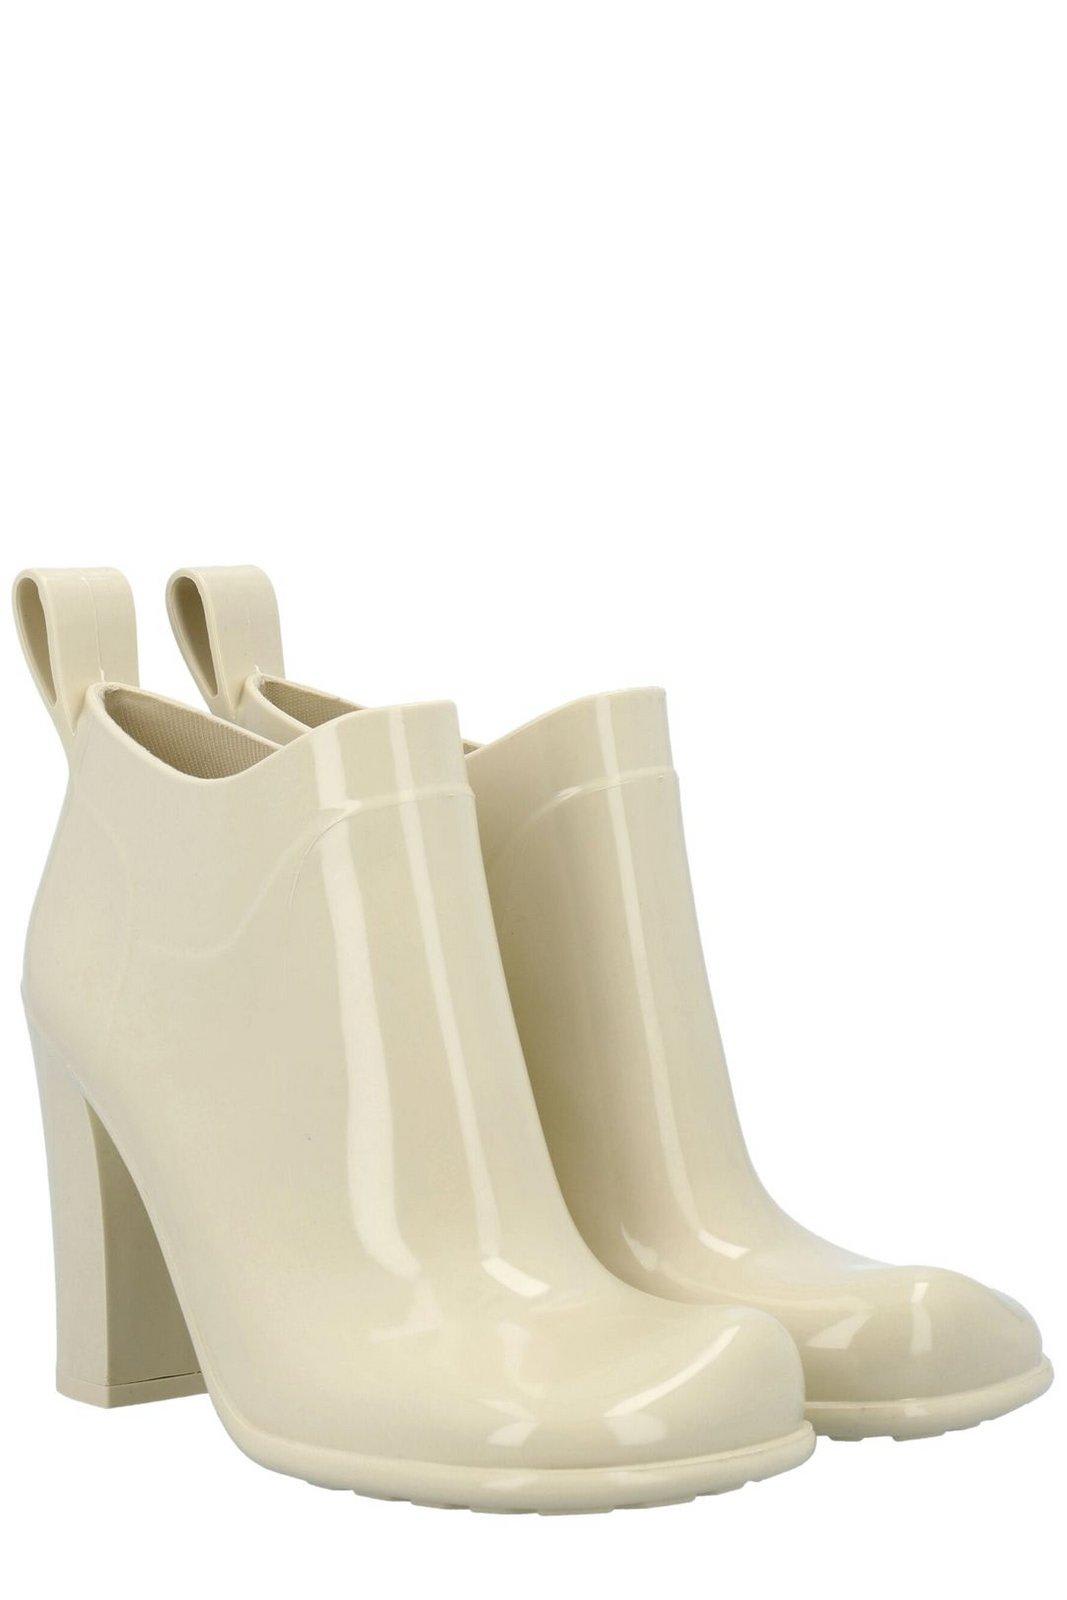 Shop Bottega Veneta Shine Square Toe Ankle Rain Boots